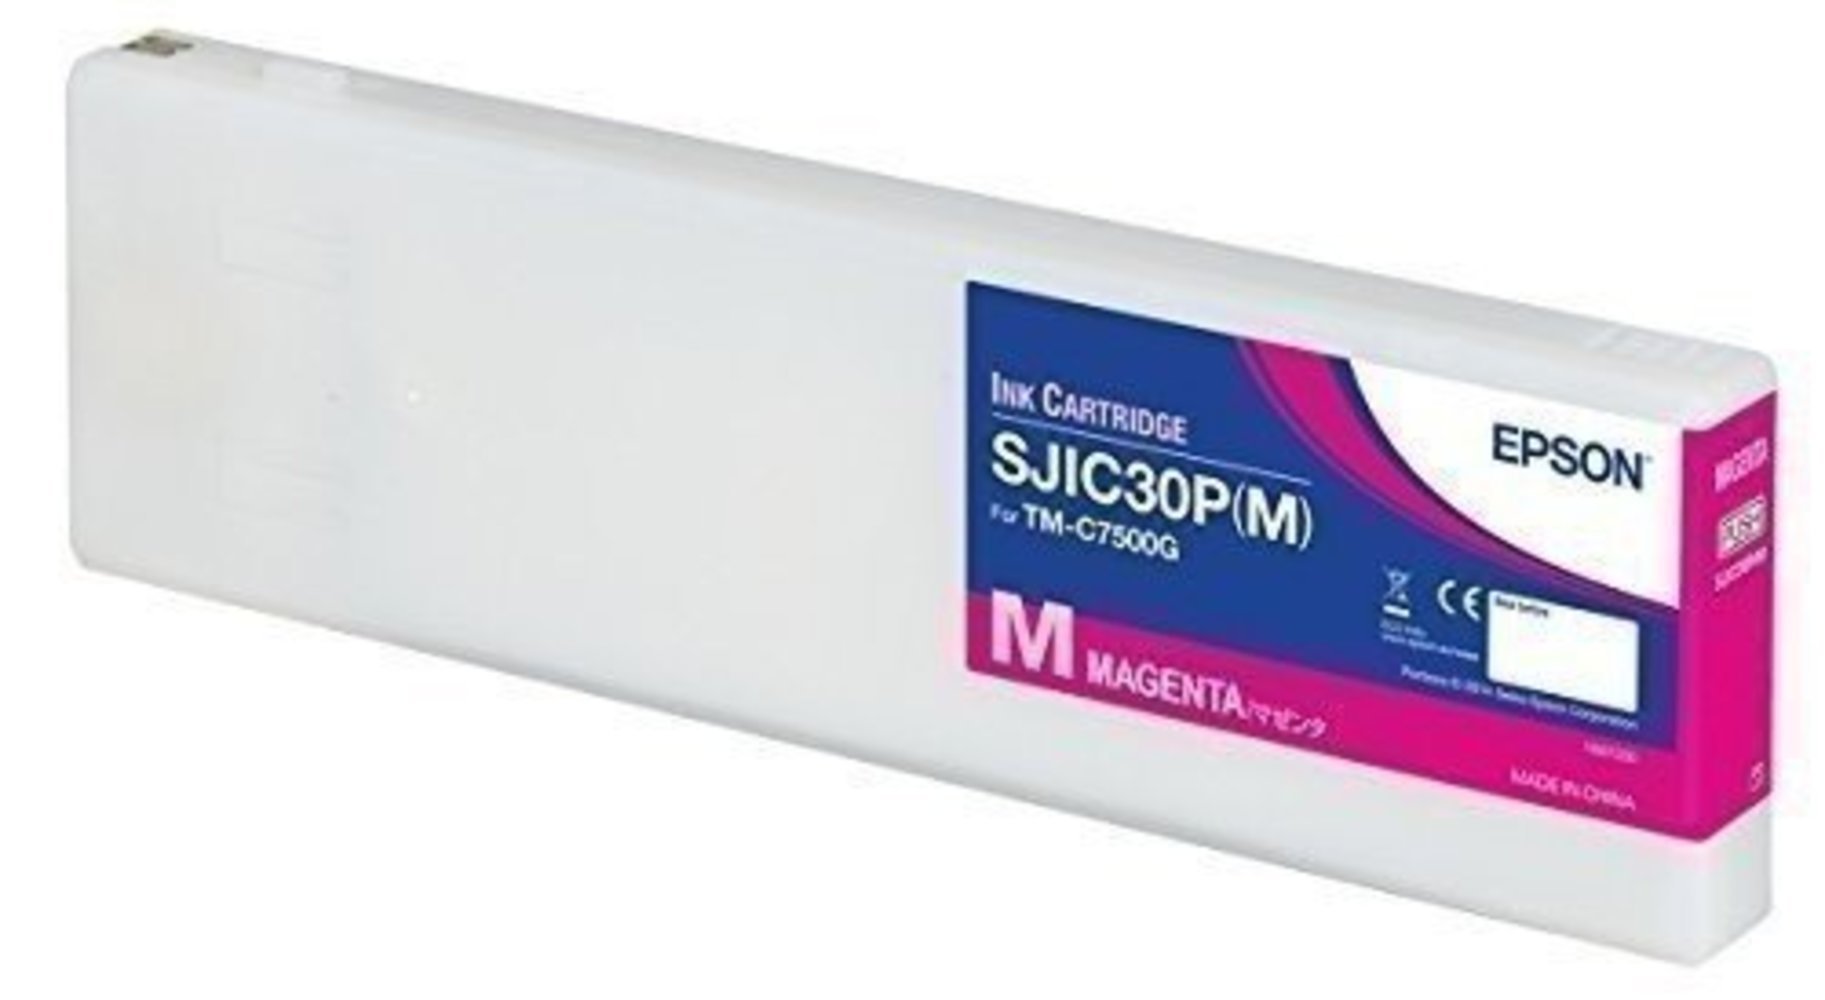 Epson SJIC30P(M) Tintenpatrone Magenta für ColorWorks C7500G